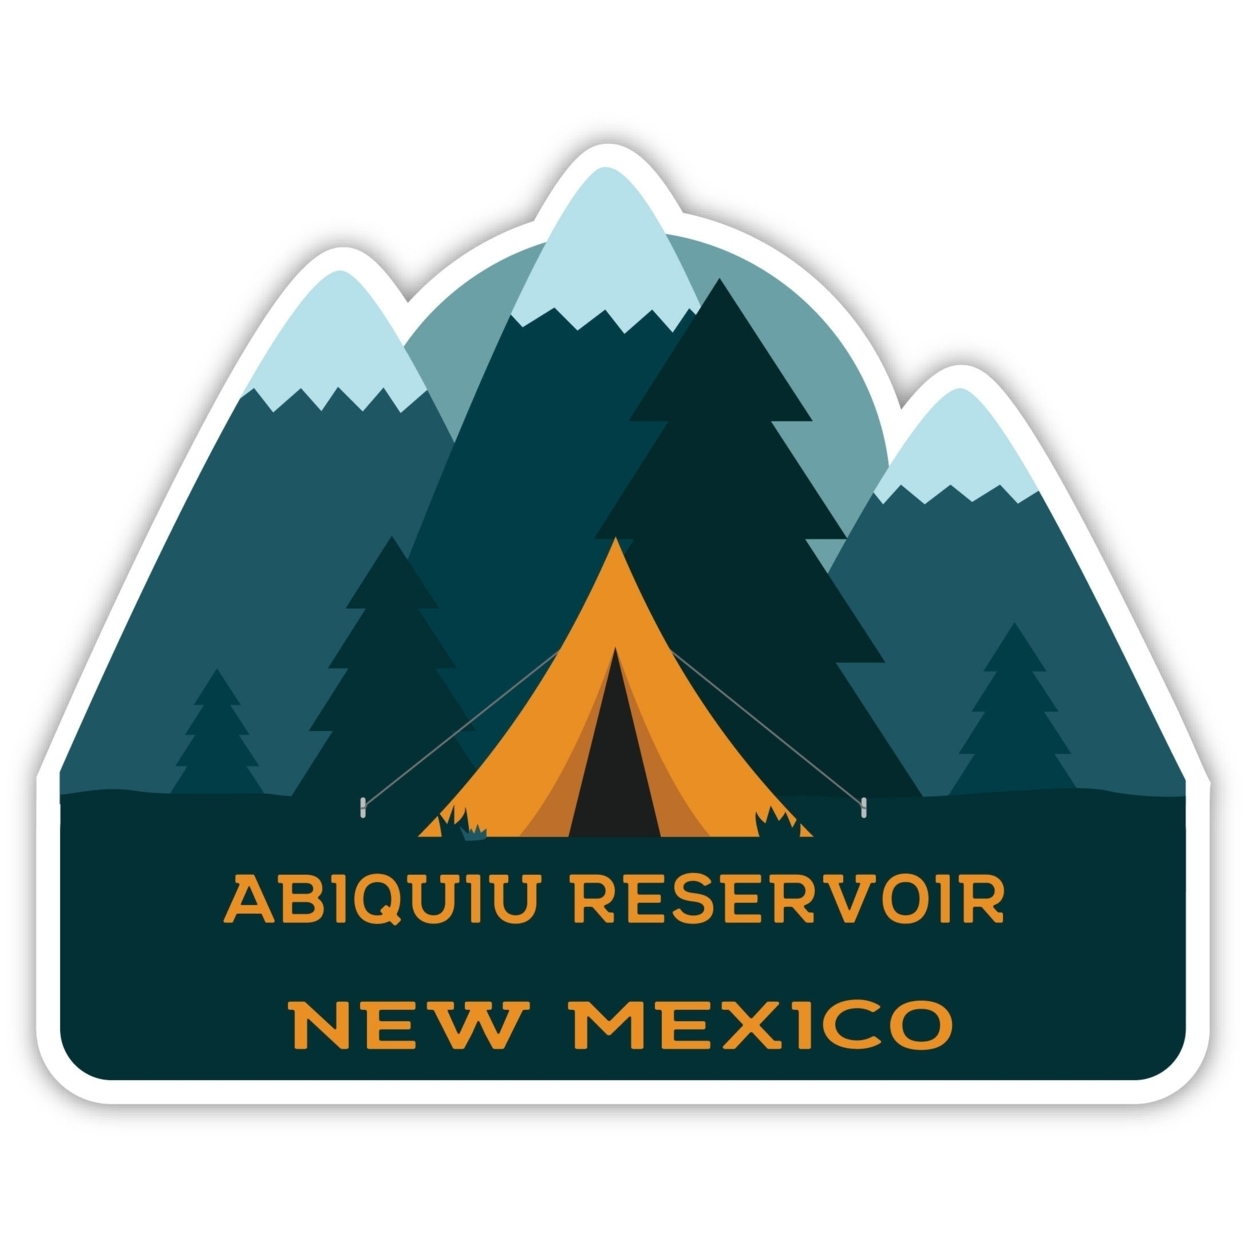 Abiquiu Reservoir New Mexico Souvenir Decorative Stickers (Choose Theme And Size) - Single Unit, 8-Inch, Tent